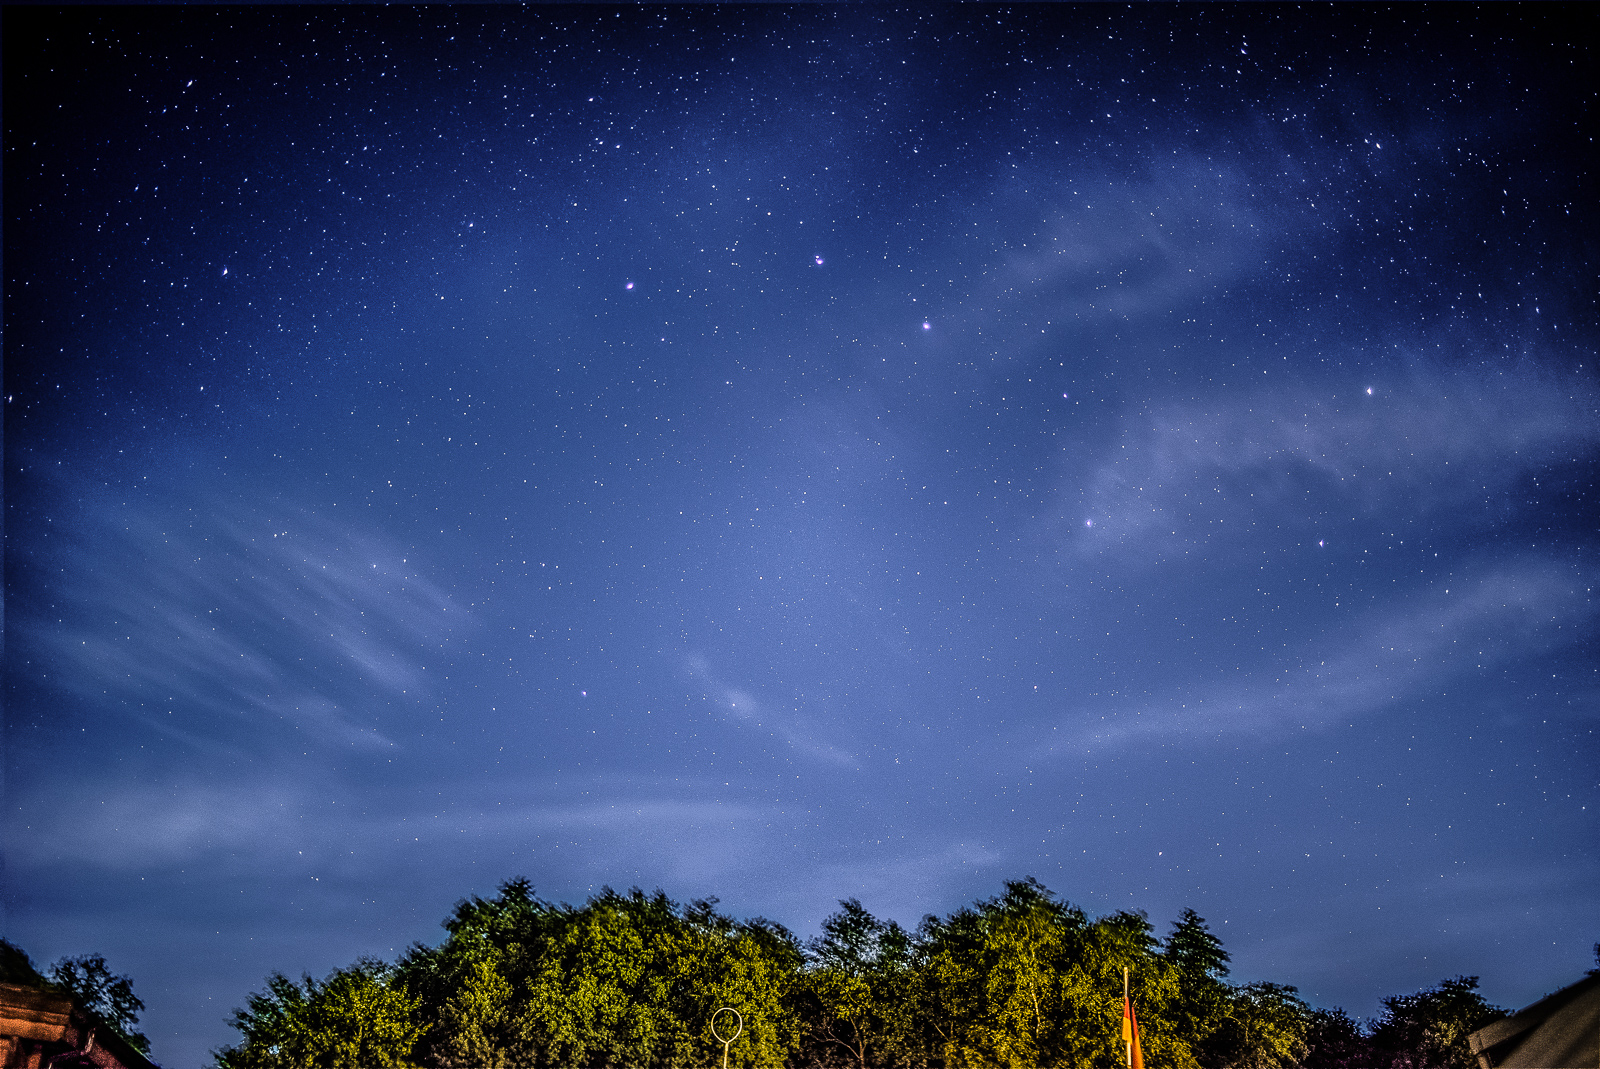 Nachthimmel über einem Stück Wald. Die Sterne sind klar zu sehen, Wolken sind bewegungsUnscharf. Rechts der Mitte deutlich das Sternbild Ursus major, der Große Bär / Großer Wagen.